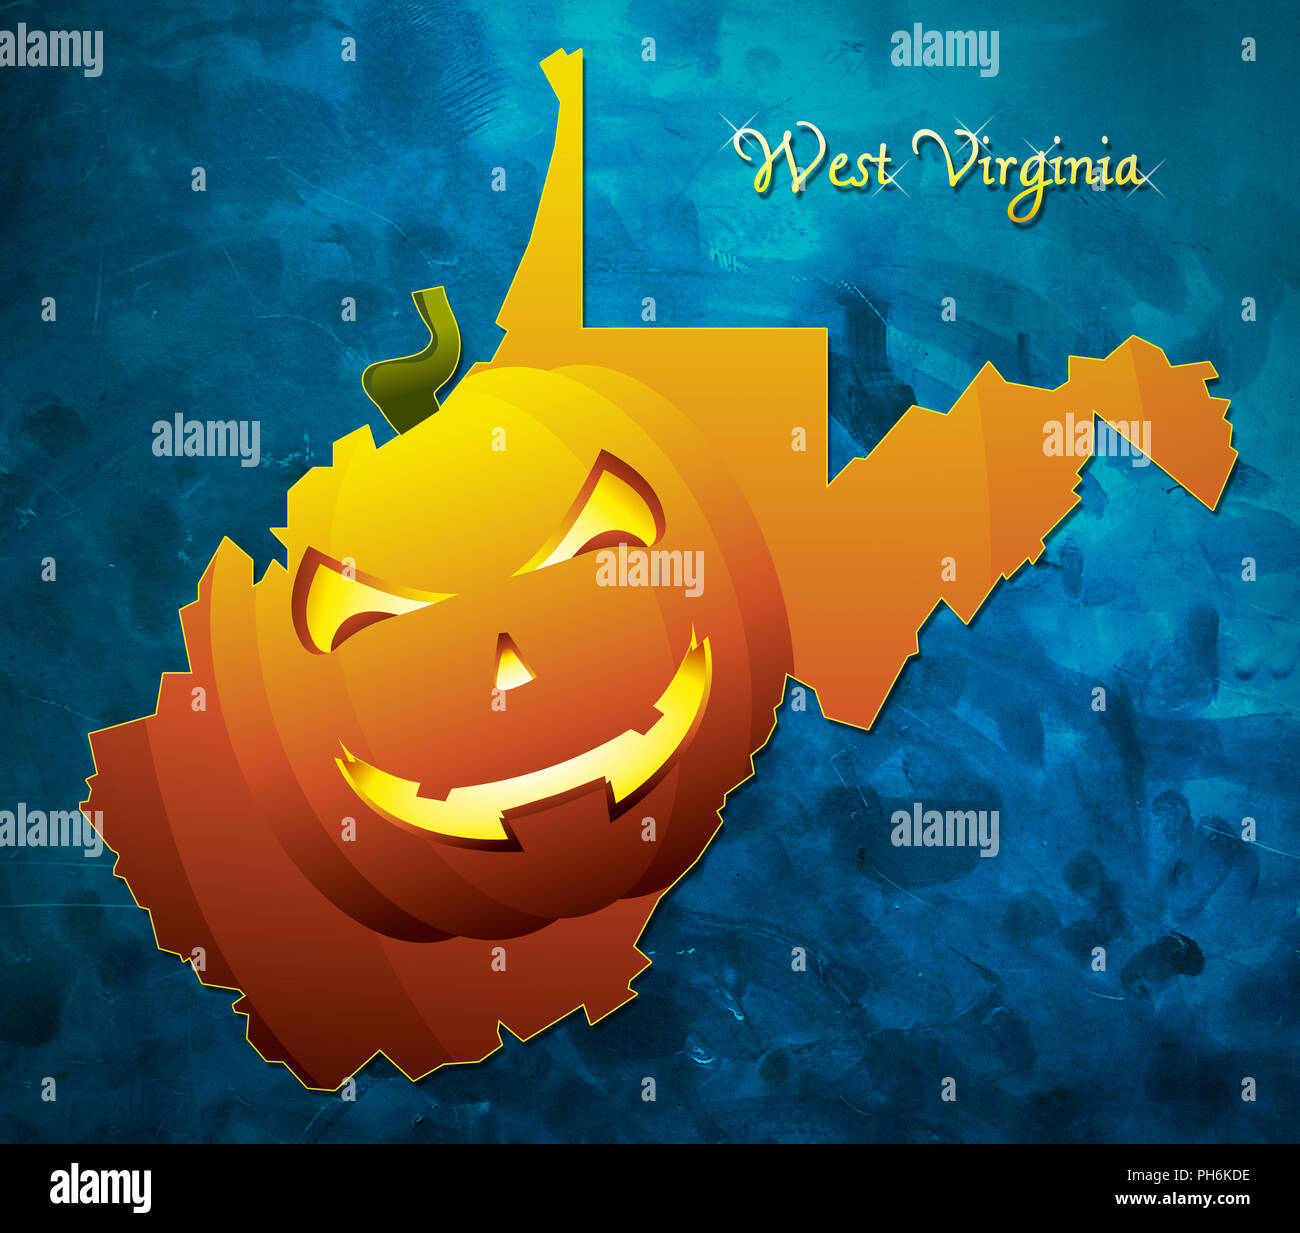 West Virginia State site USA avec face de citrouille halloween illustration Banque D'Images